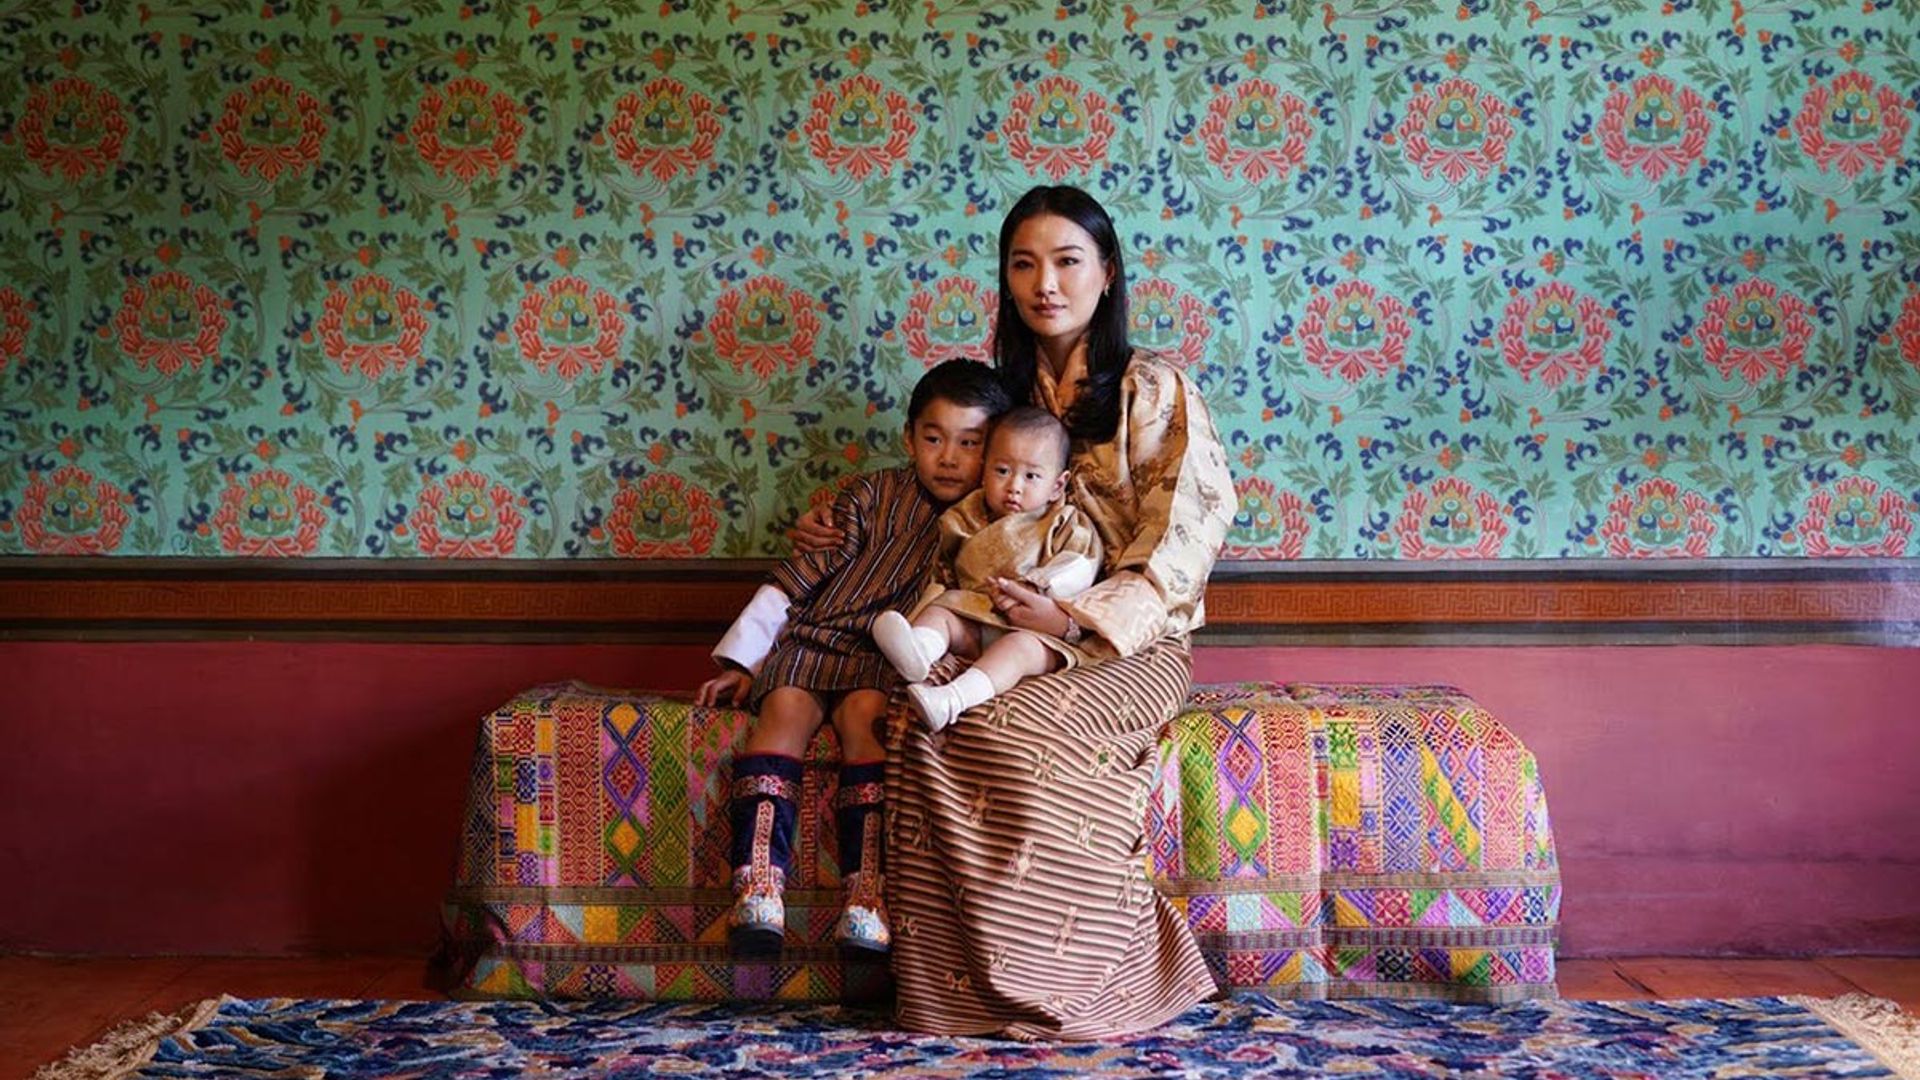 bhutan-royals